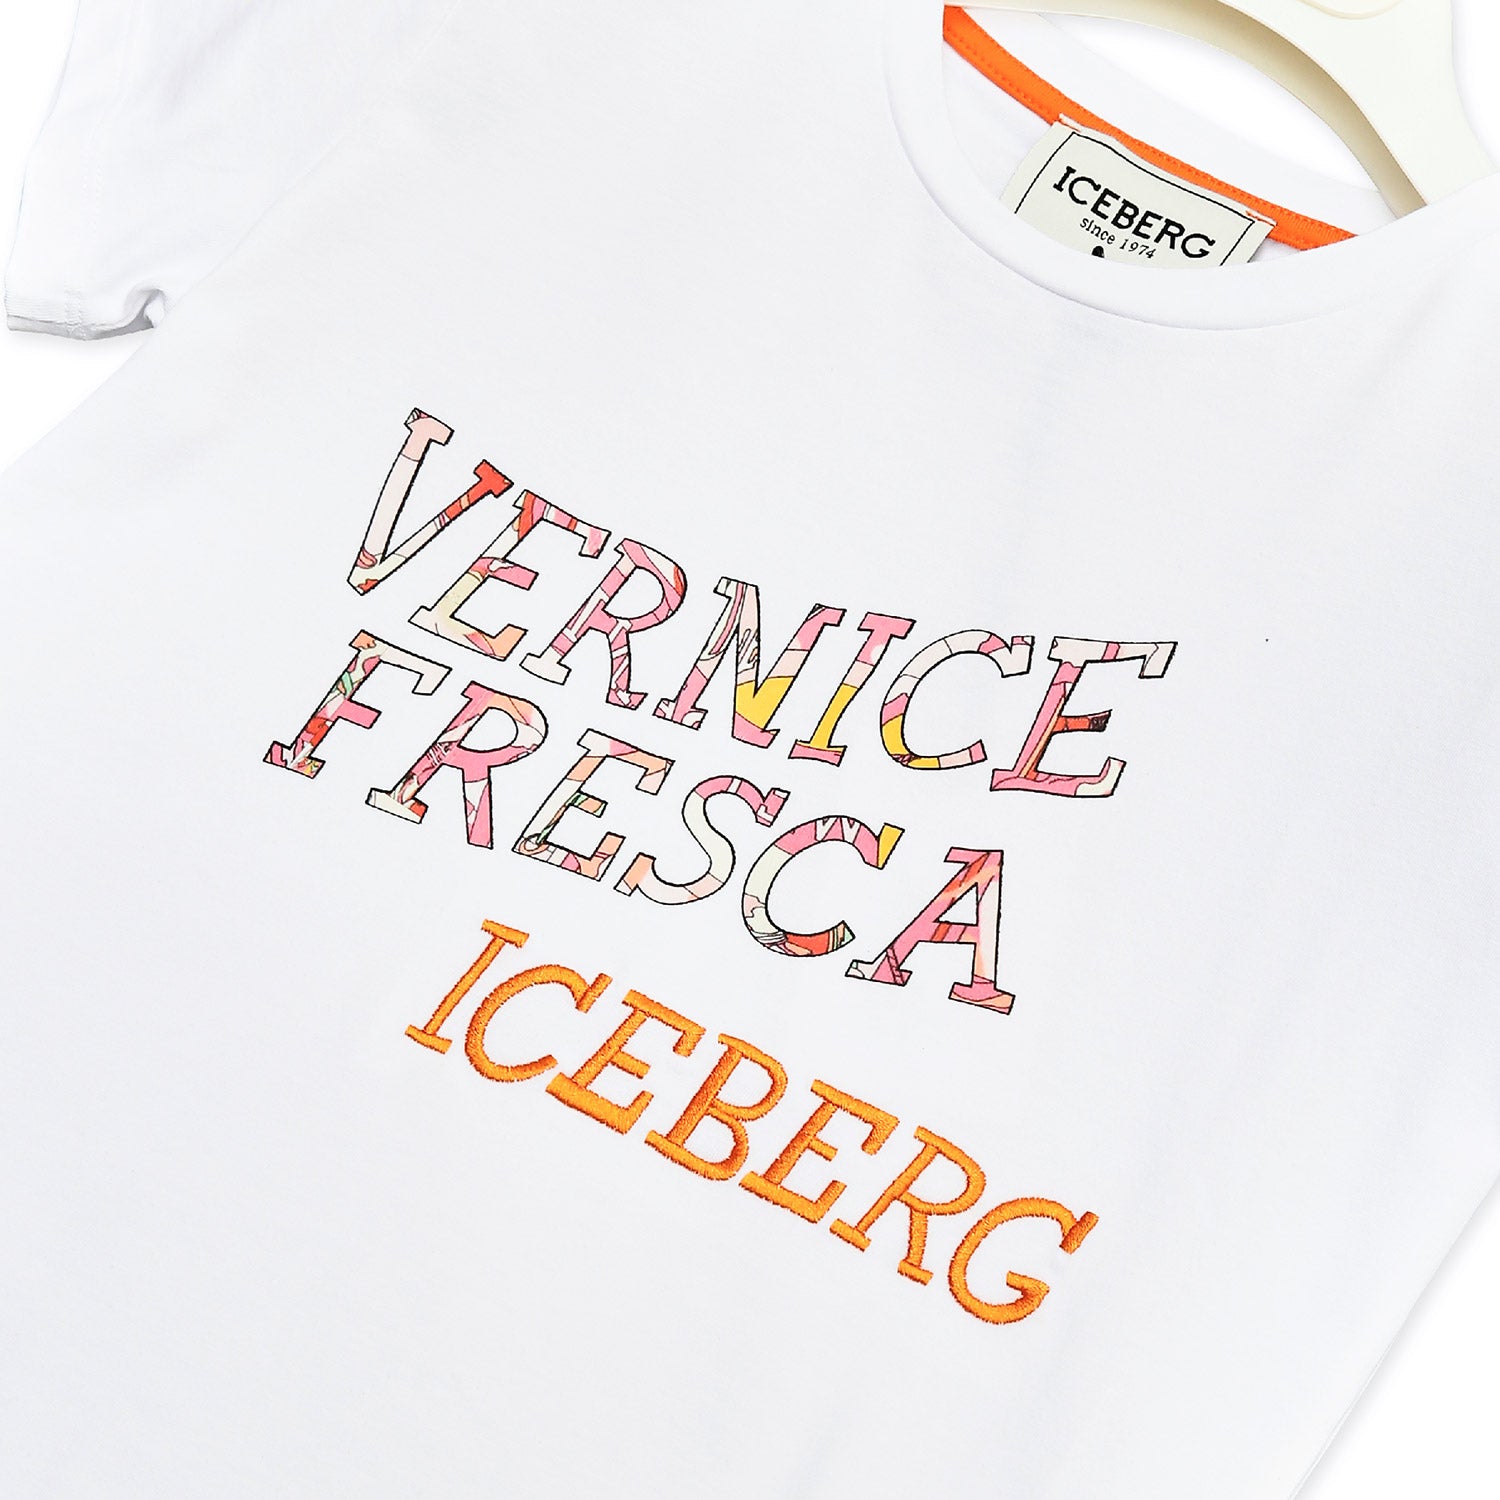 T-shirt ragazza Iceberg in cotone